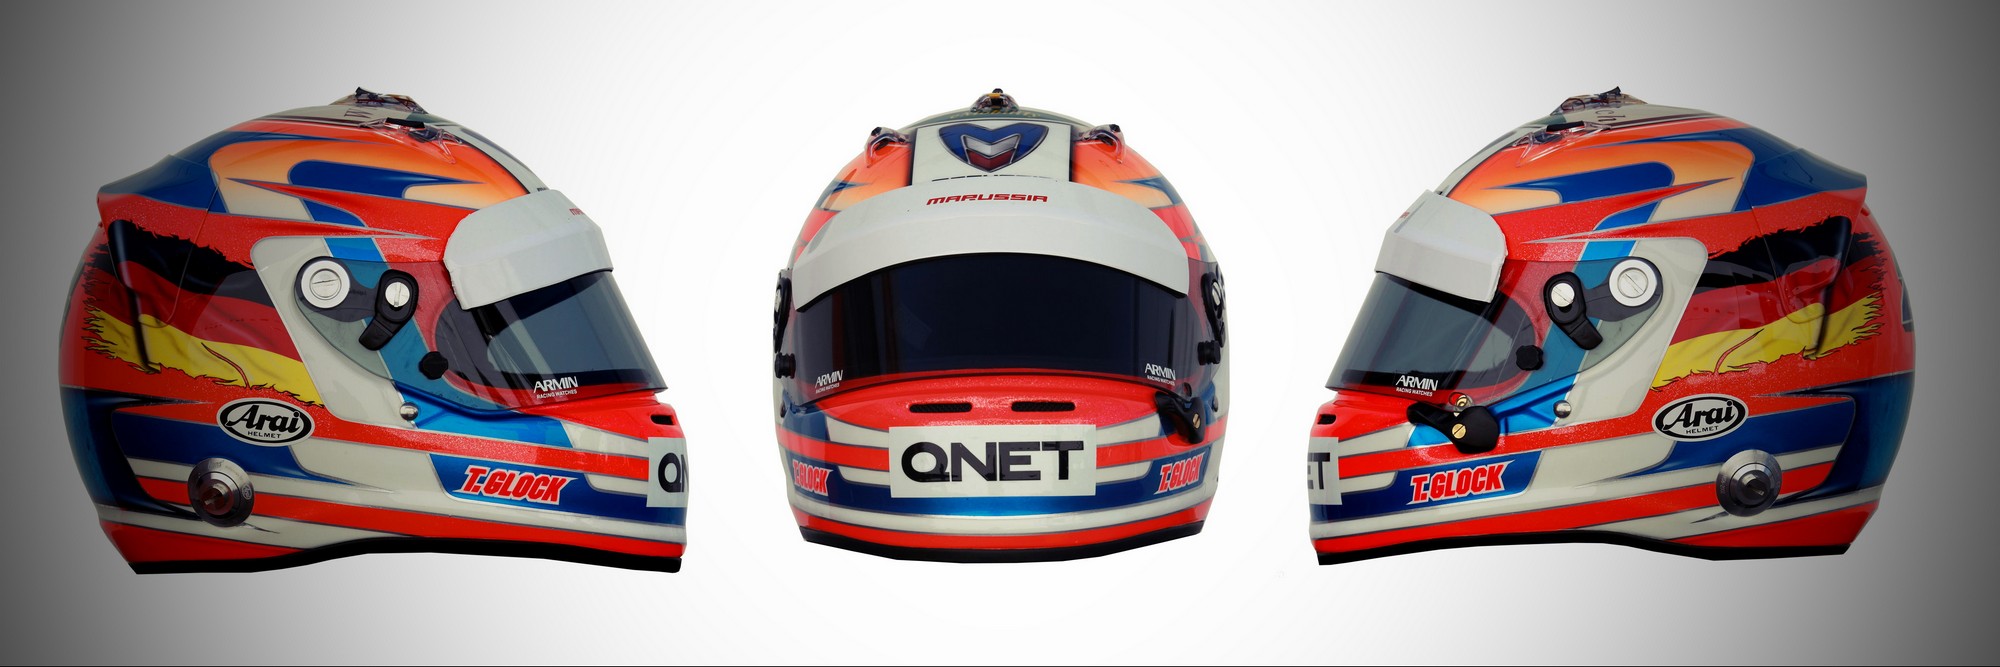 Шлем Тимо Глока на сезон 2012 года | 2012 helmet of Timo Glock